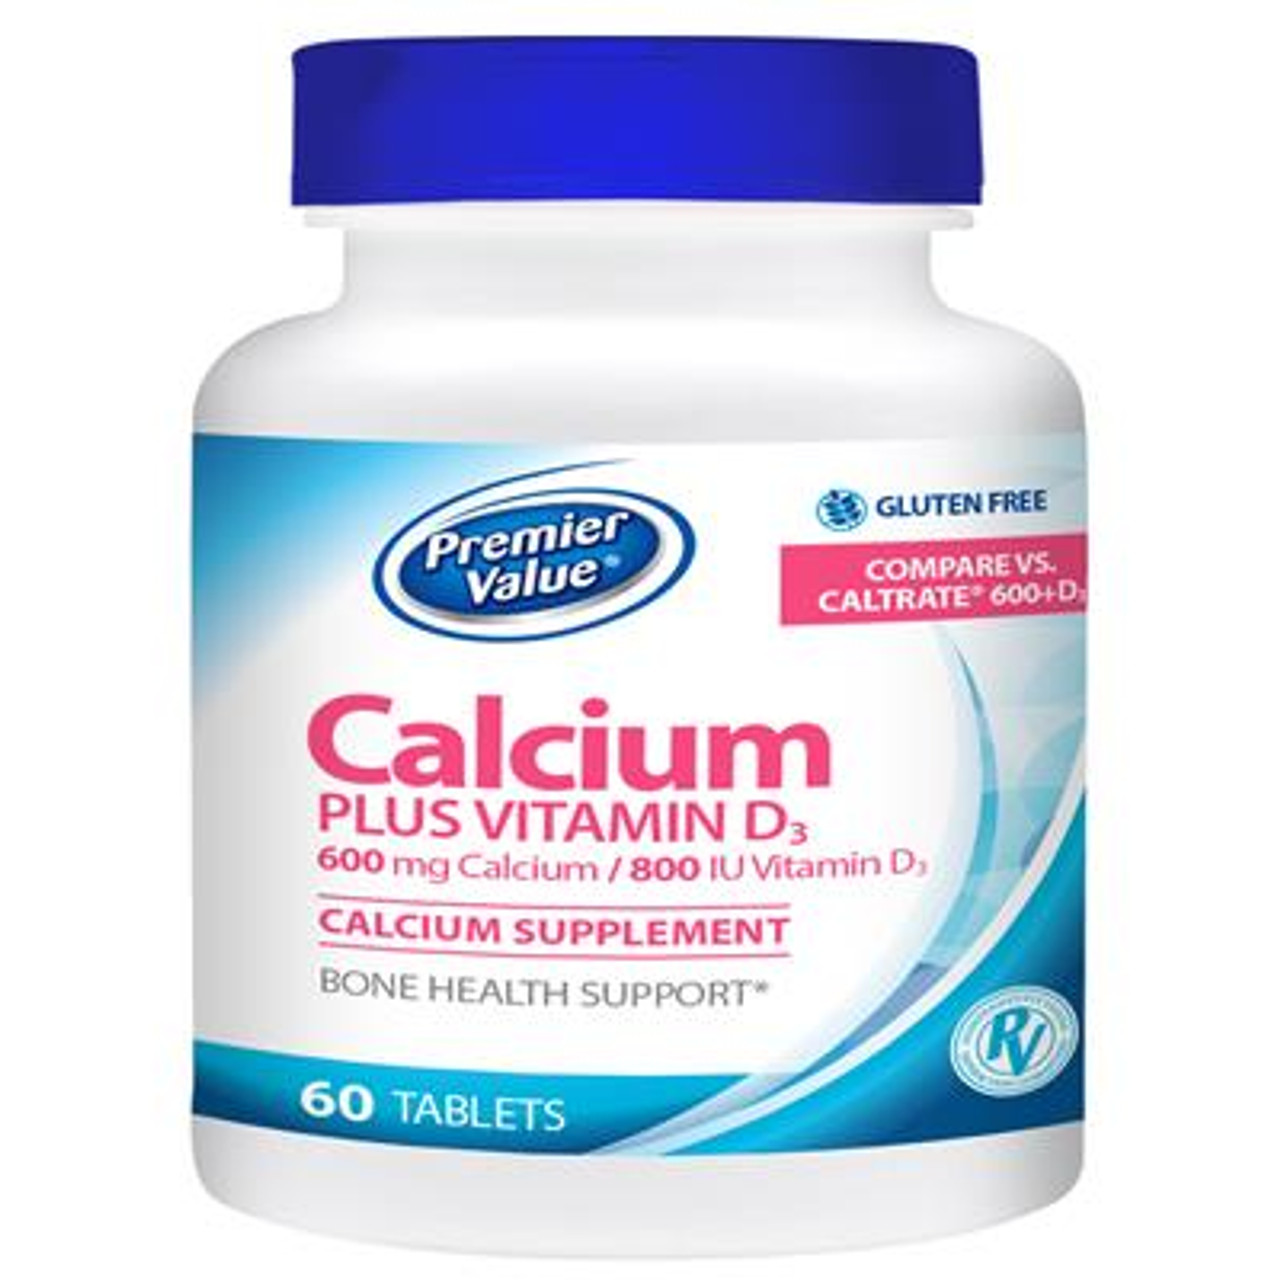 Premier Value Calcium + D Supplement - 600/800mg, Tablets ...